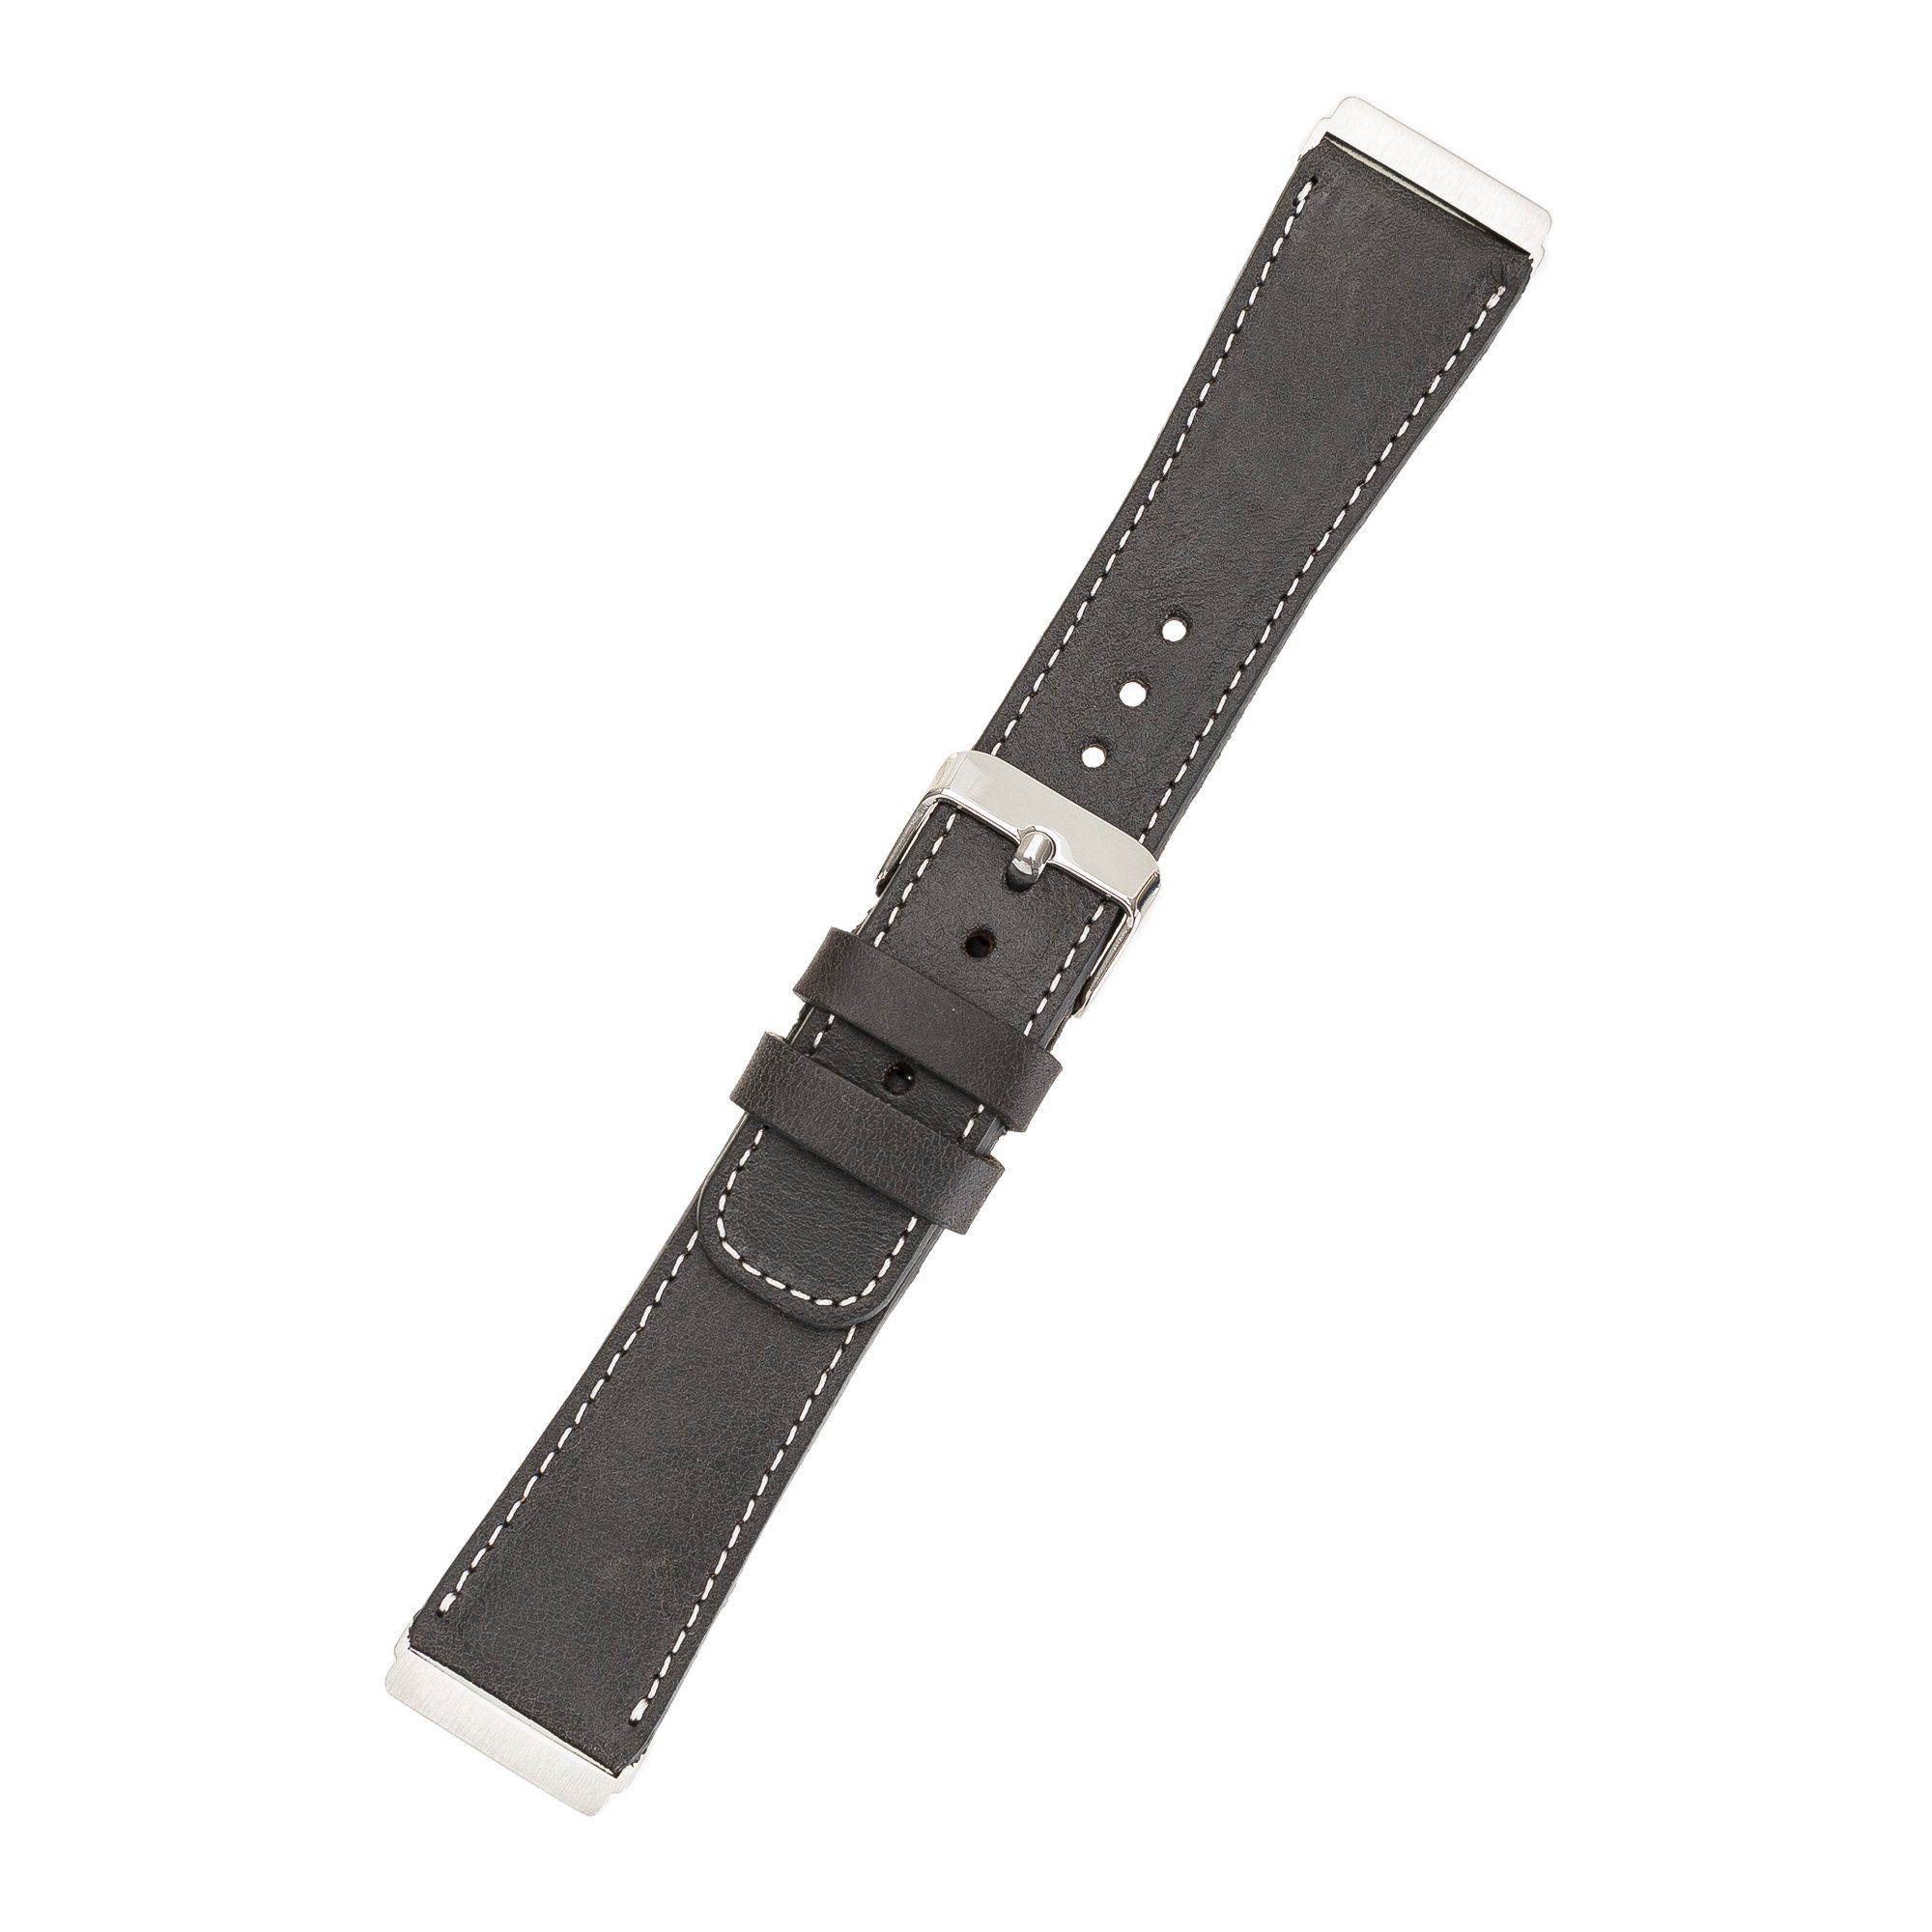 / Versa Sense Leder Leather Ersatzarmband 4 Fitbit 2 3 Renna / & Armband Dunkelgrau Smartwatch-Armband Echtes